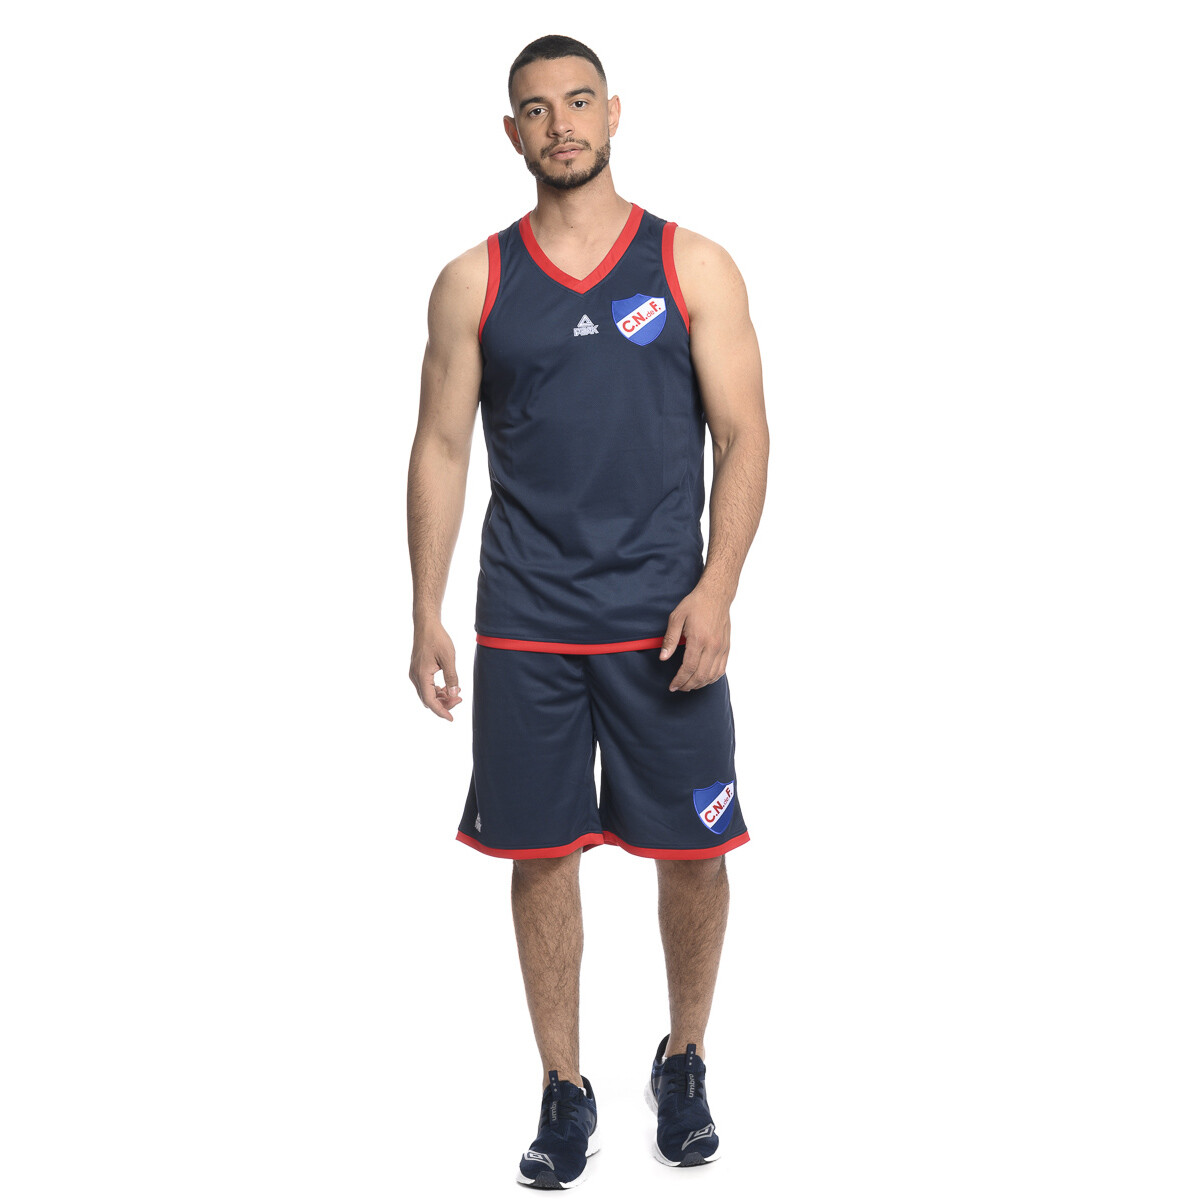 Camiseta Basketball 2021 Nacional Oficial Hombre - 149 